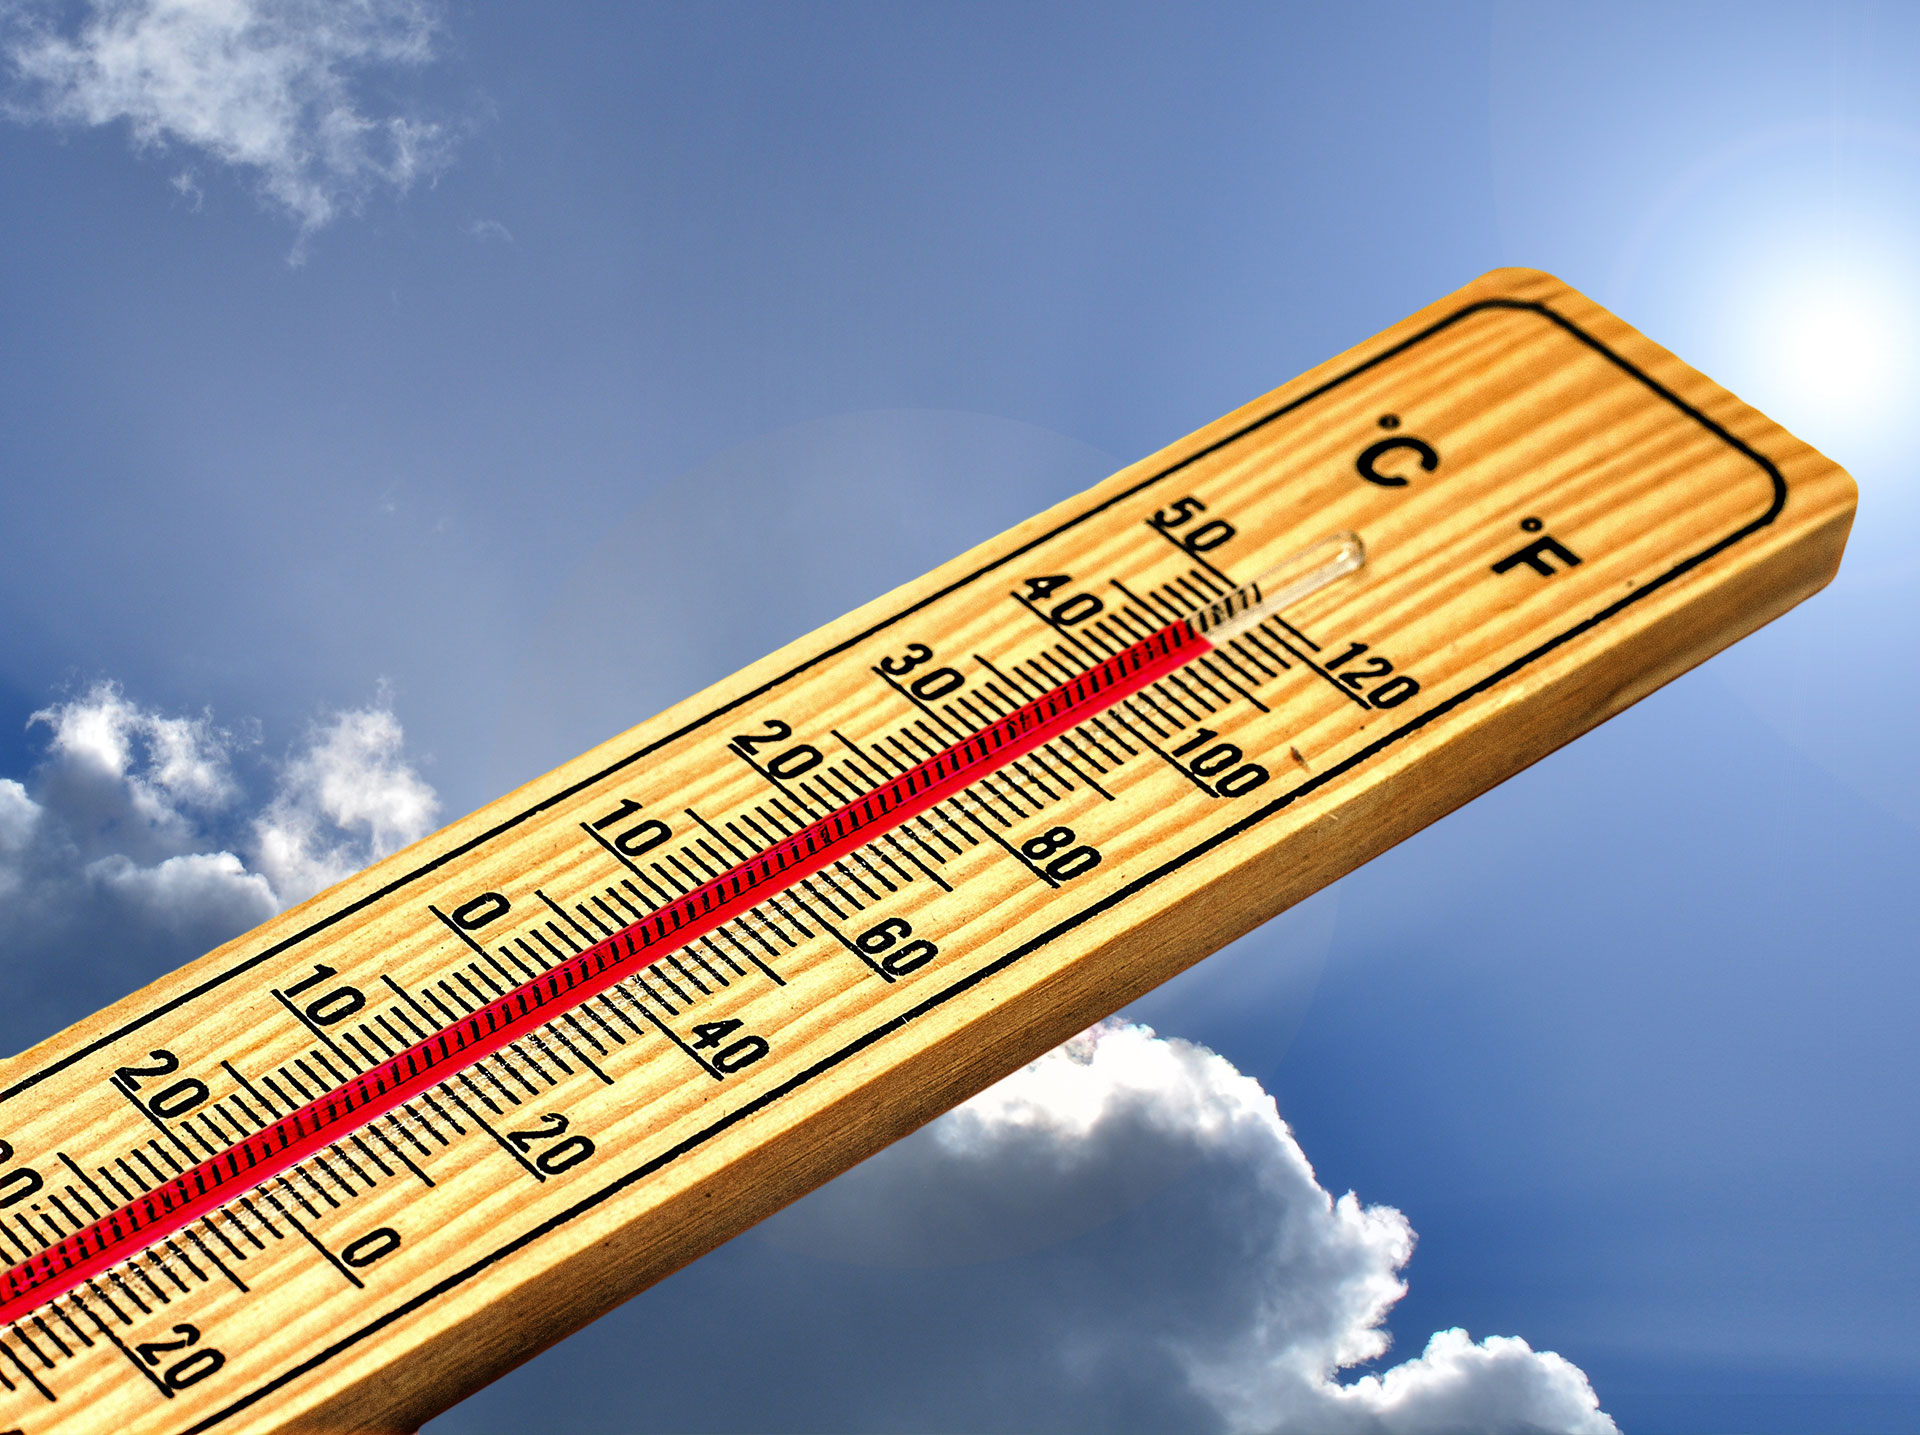 Thermometer, das 46 Grad Celsius anzeigt, vor blauem Himmel mit Wolken ©Gerd Altmann - pixabay